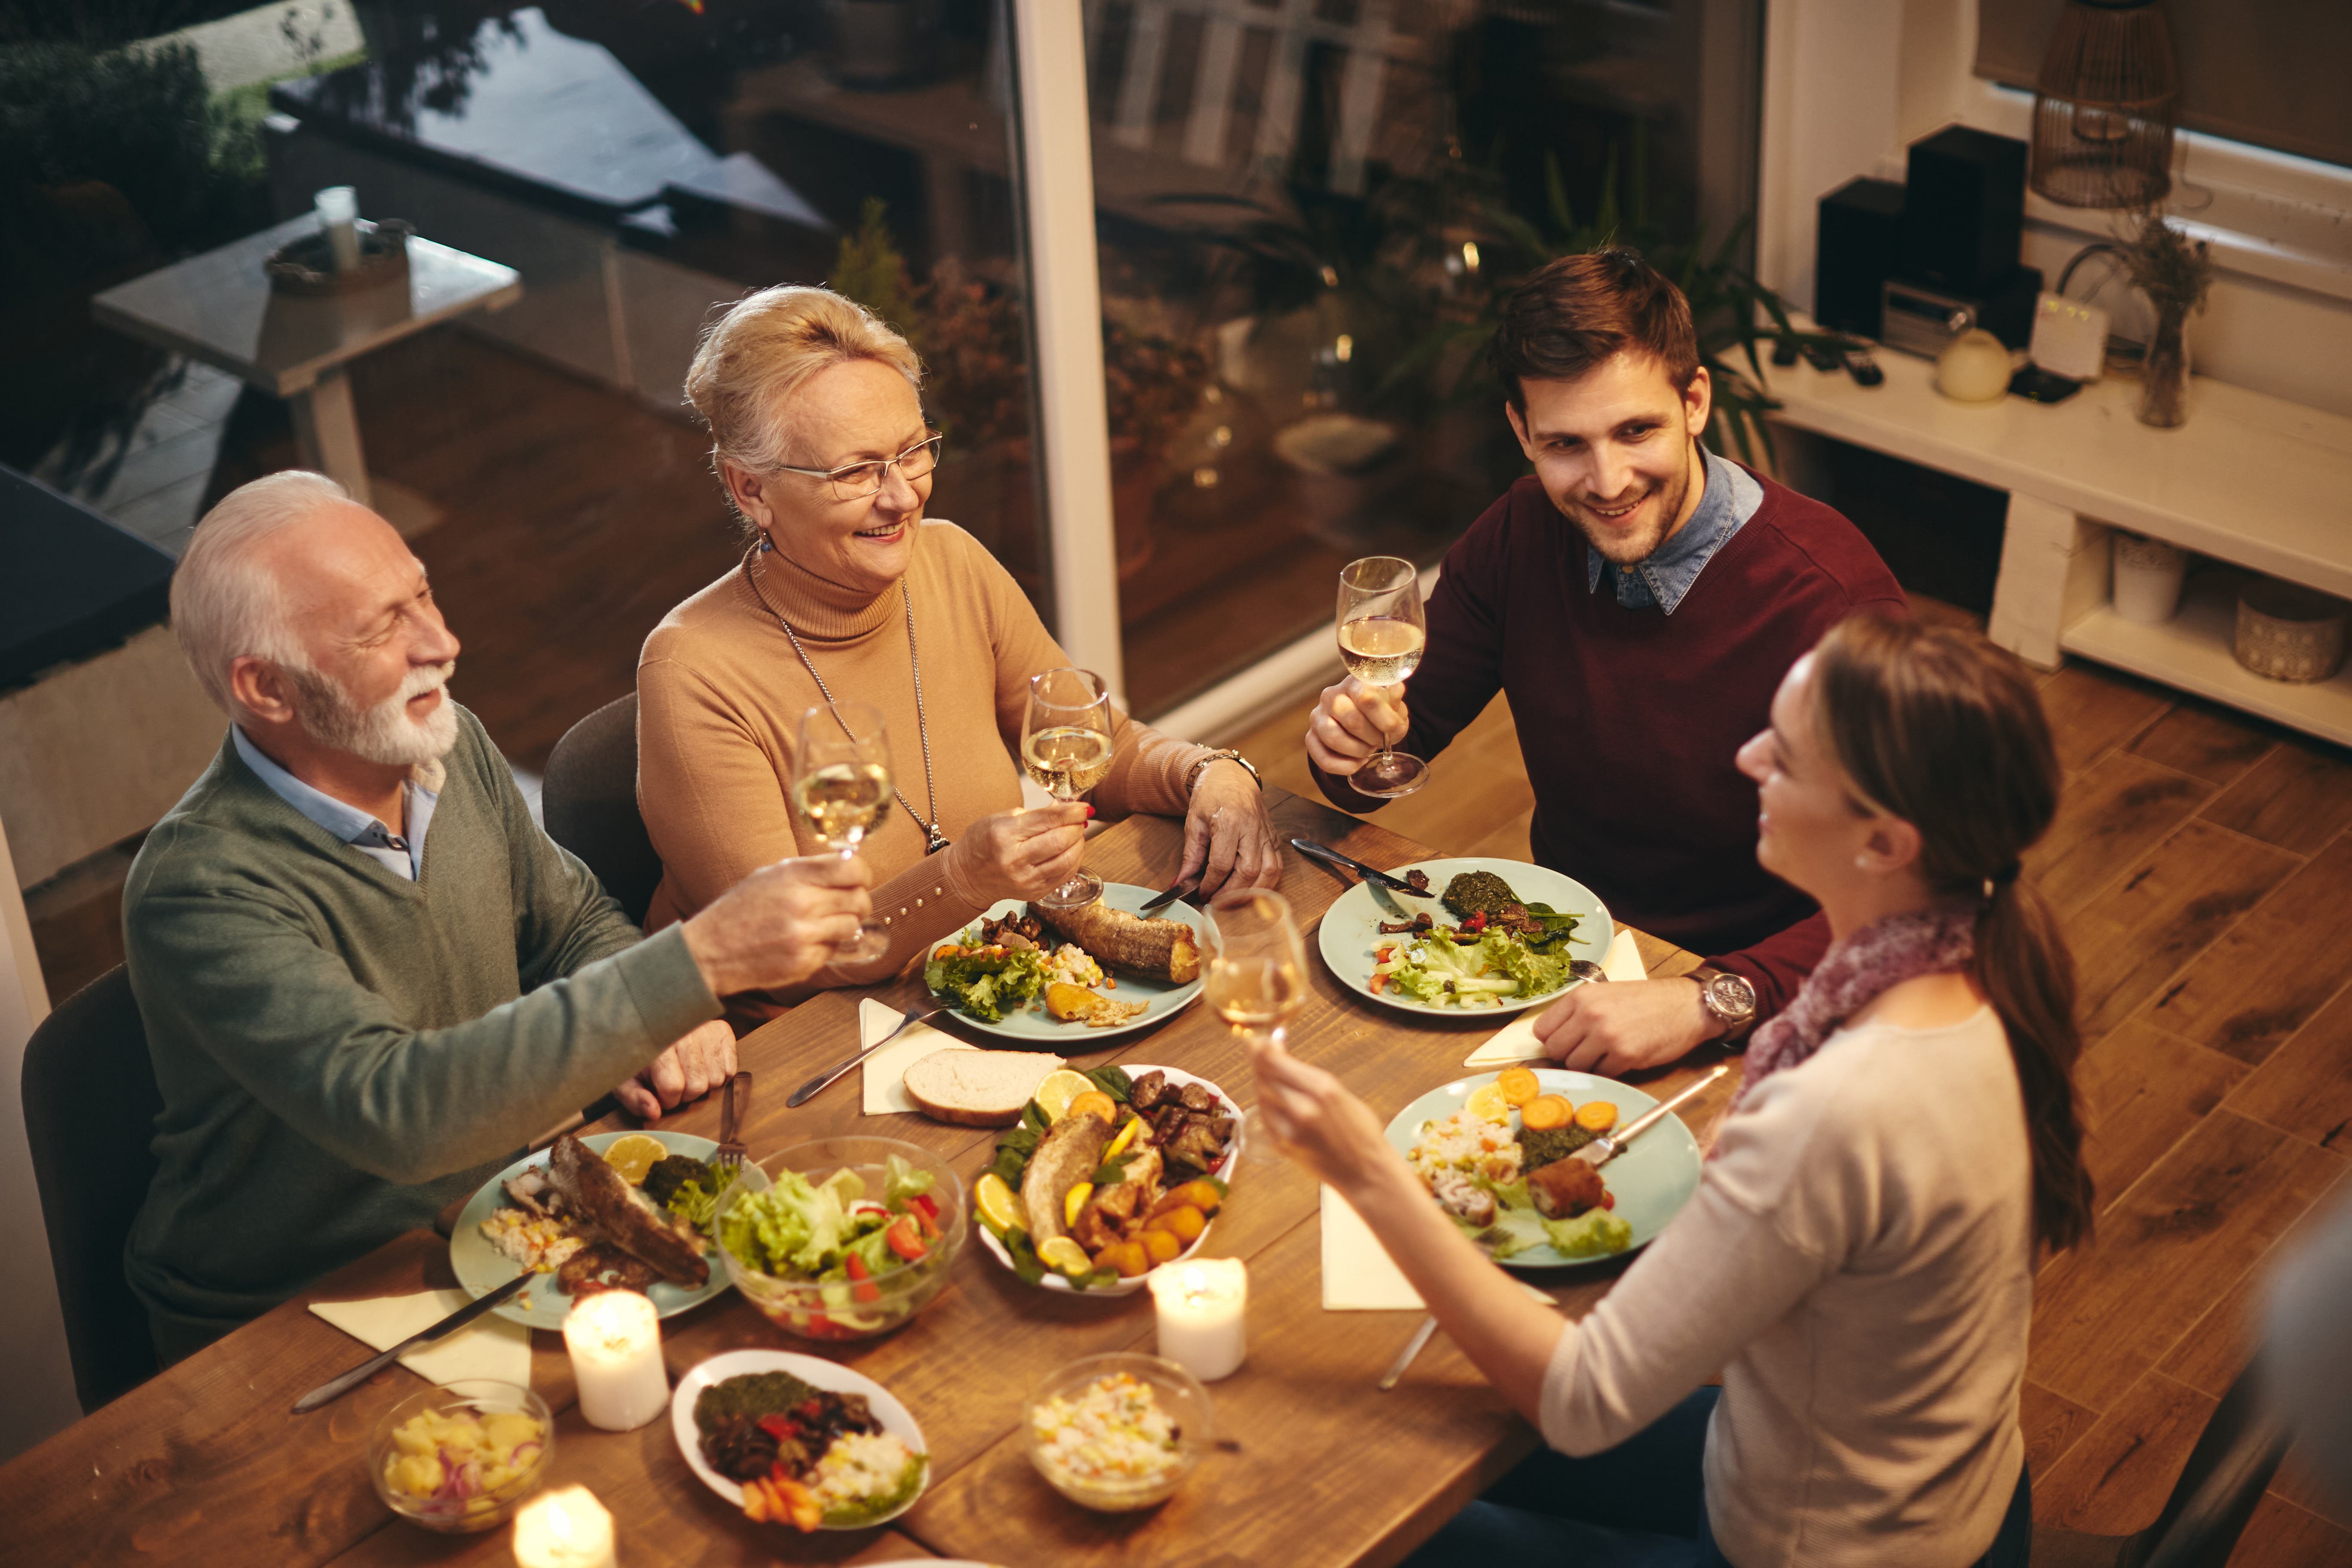 Une famille en train de dîner | Source : Shutterstock